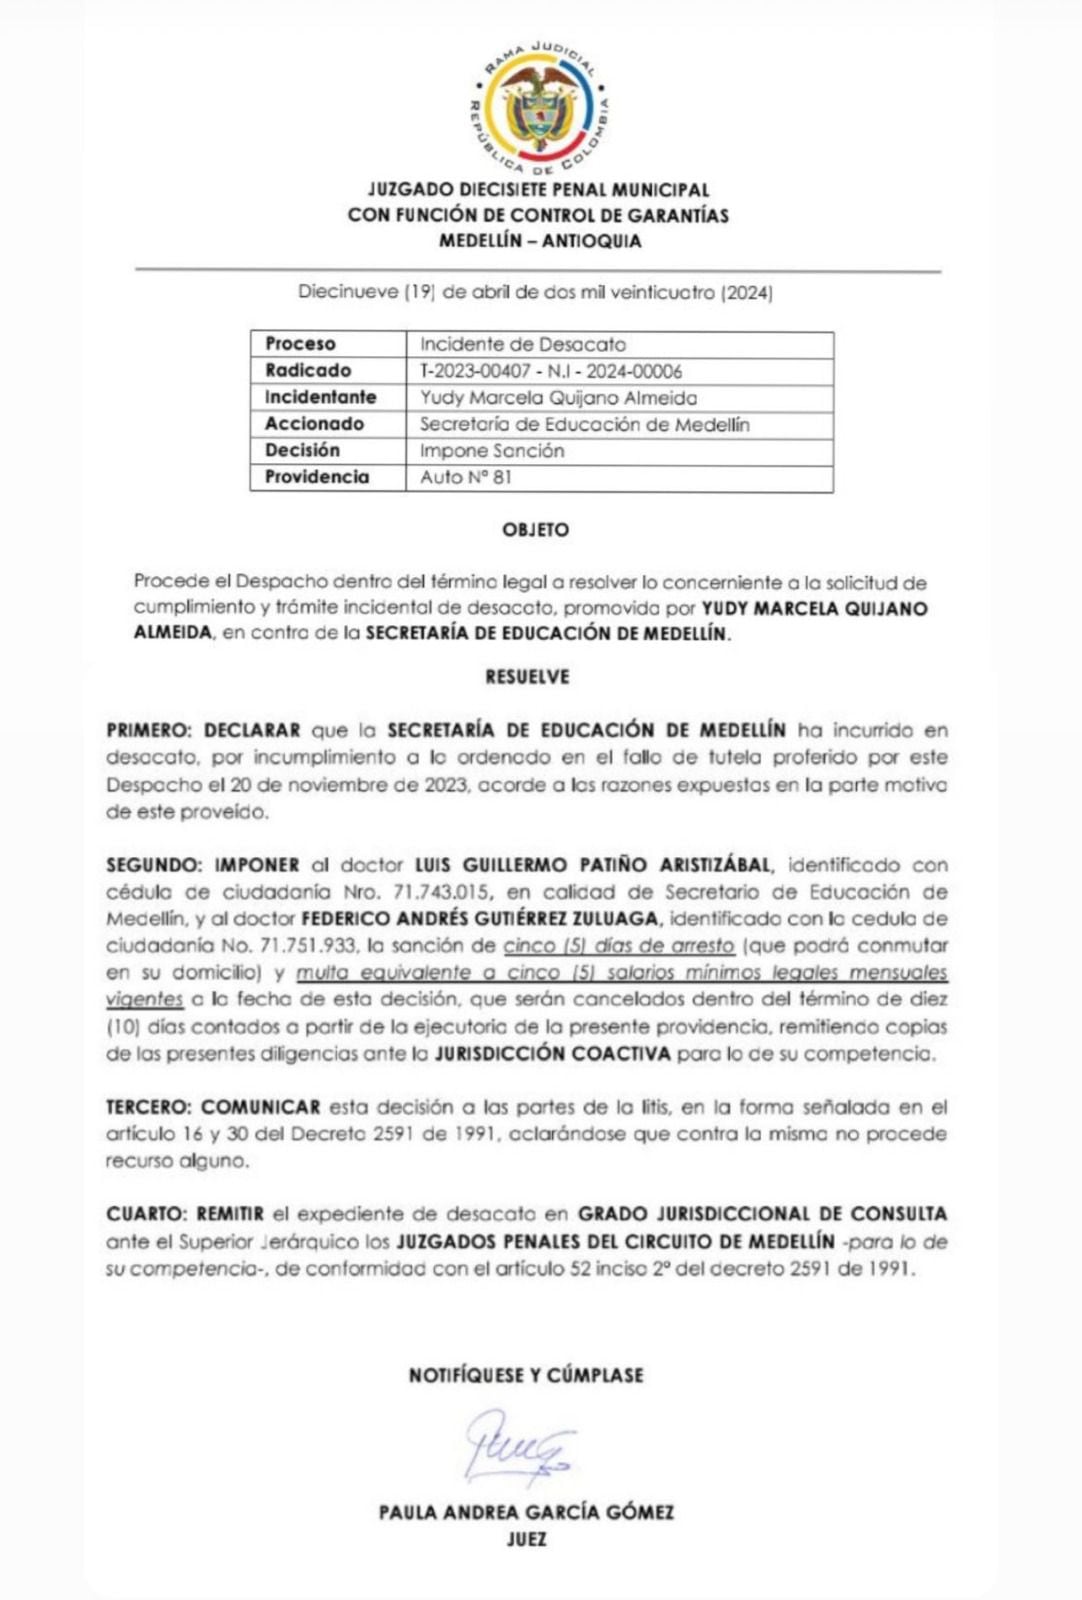 Este fue el documento emitido por el juzgado 17 penal municipal con función de garantías de Medellín.